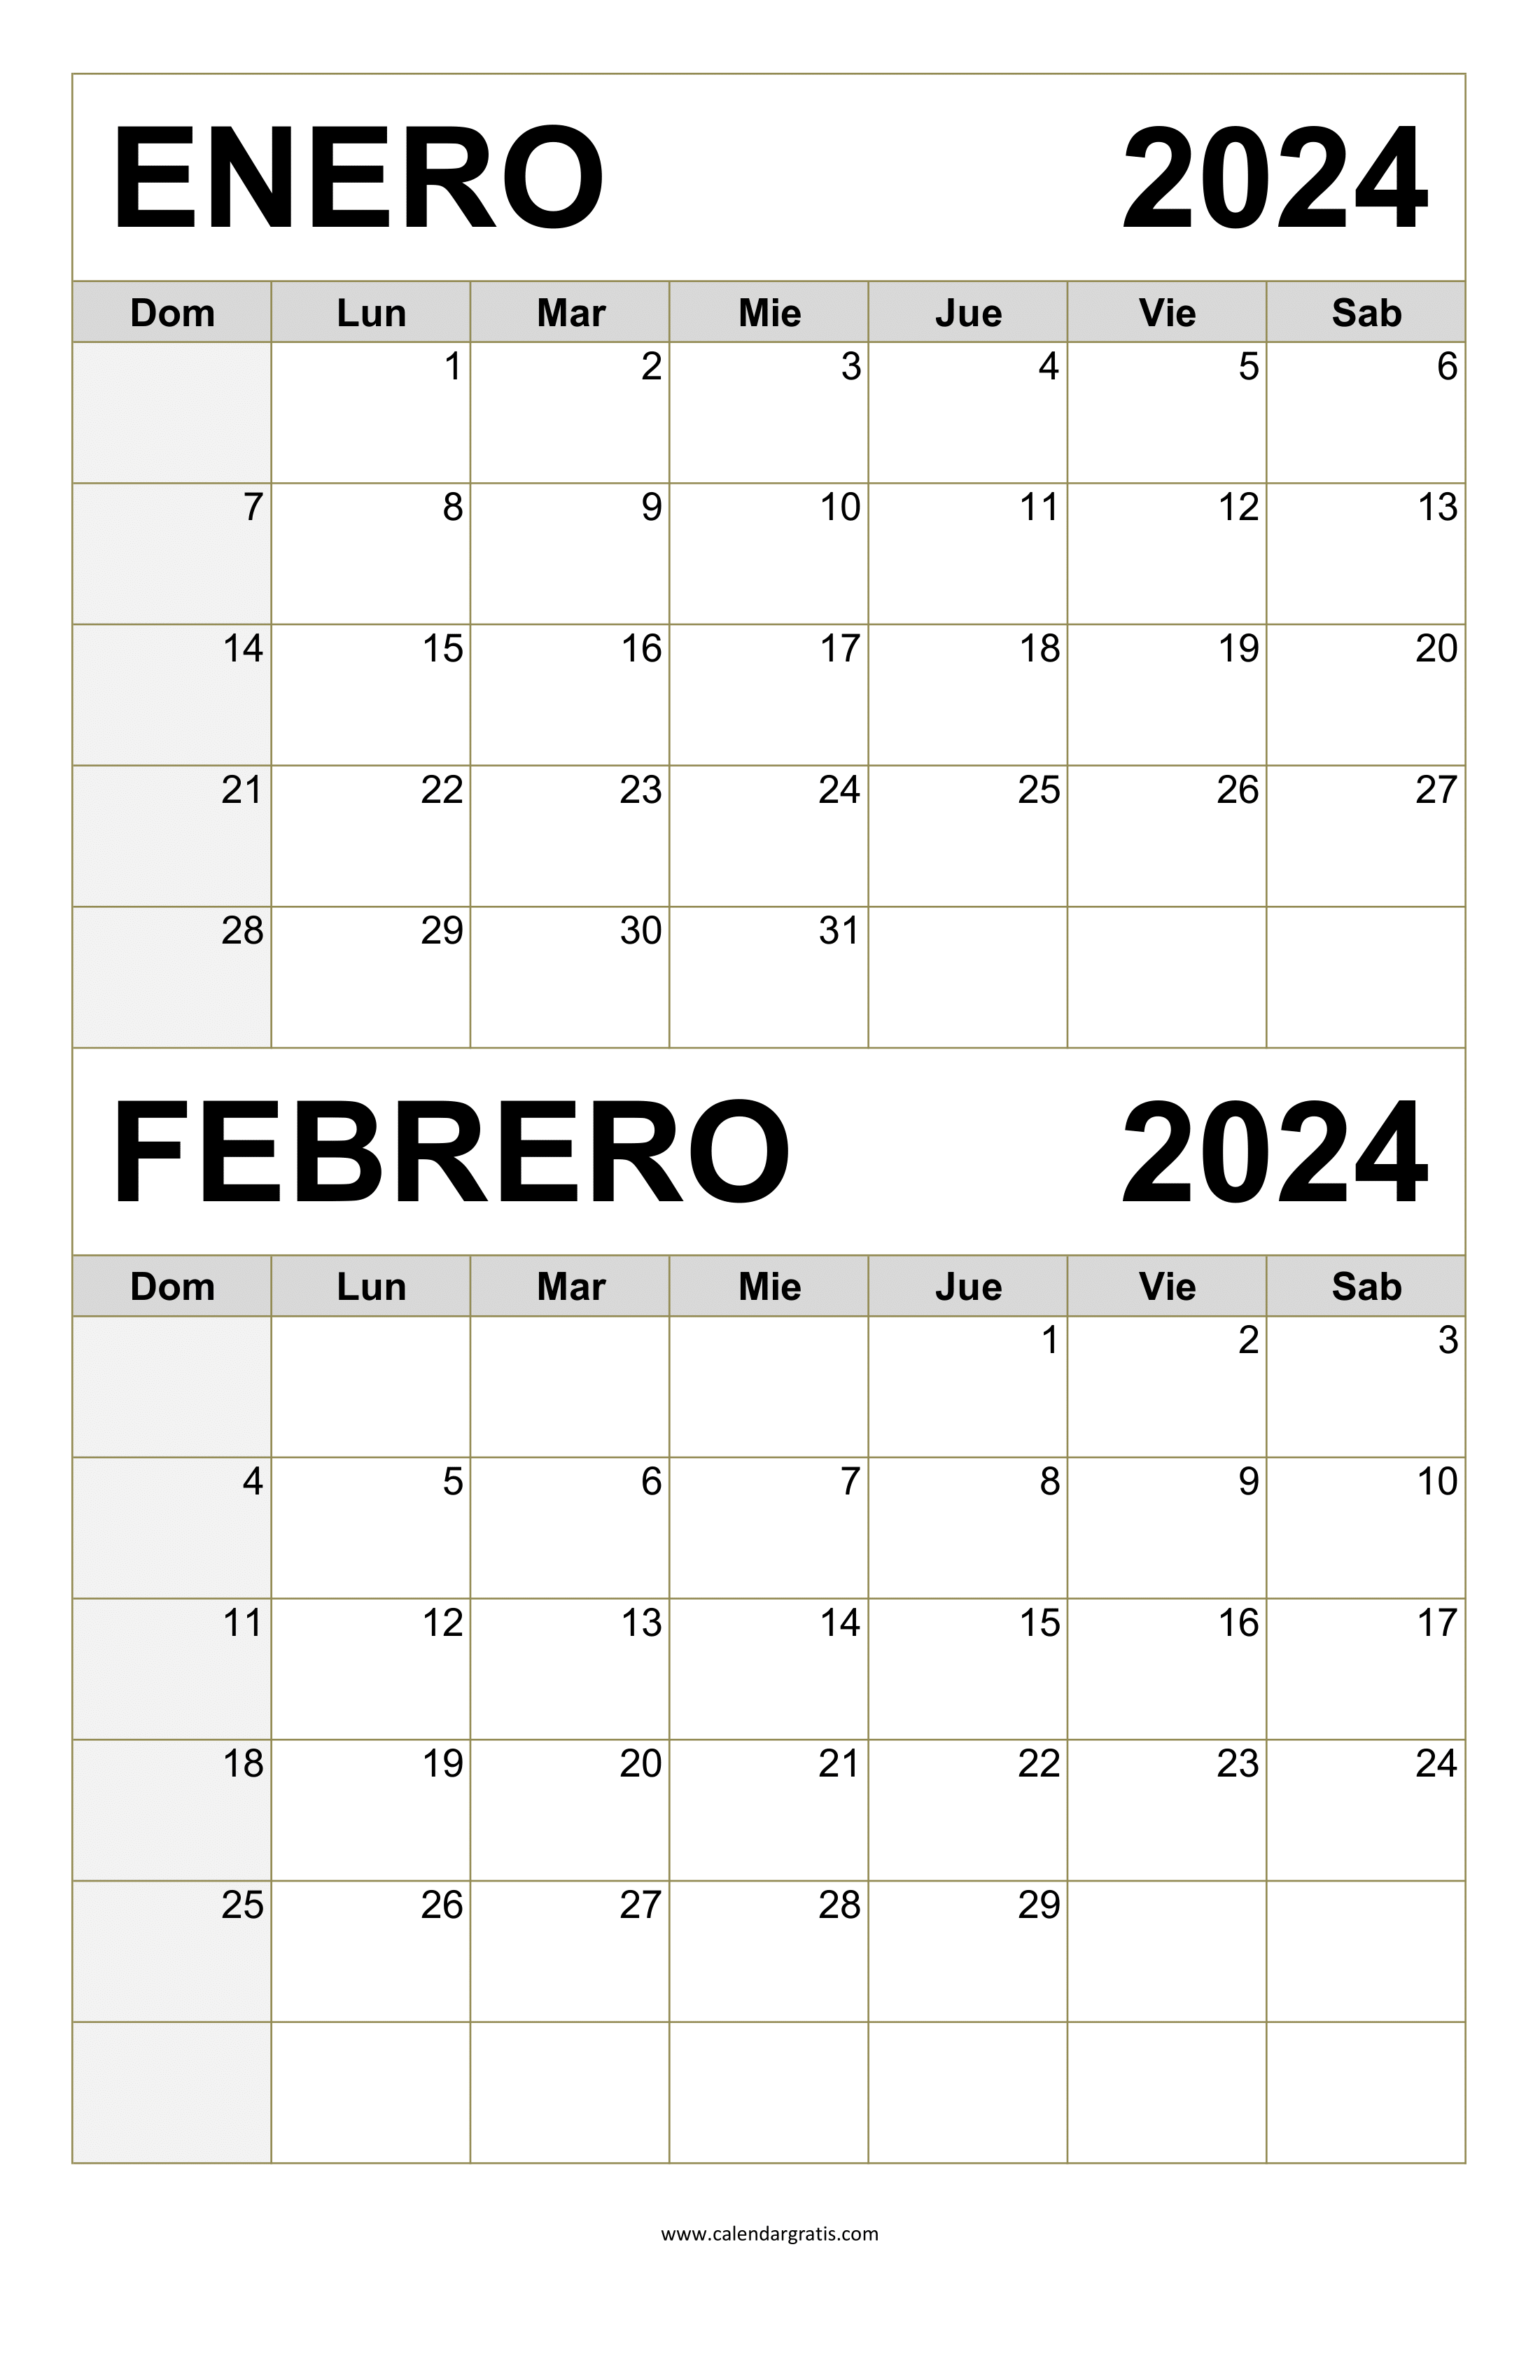 Calendario Enero y Febrero 2024: Plantillas para organizar tus fechas importantes